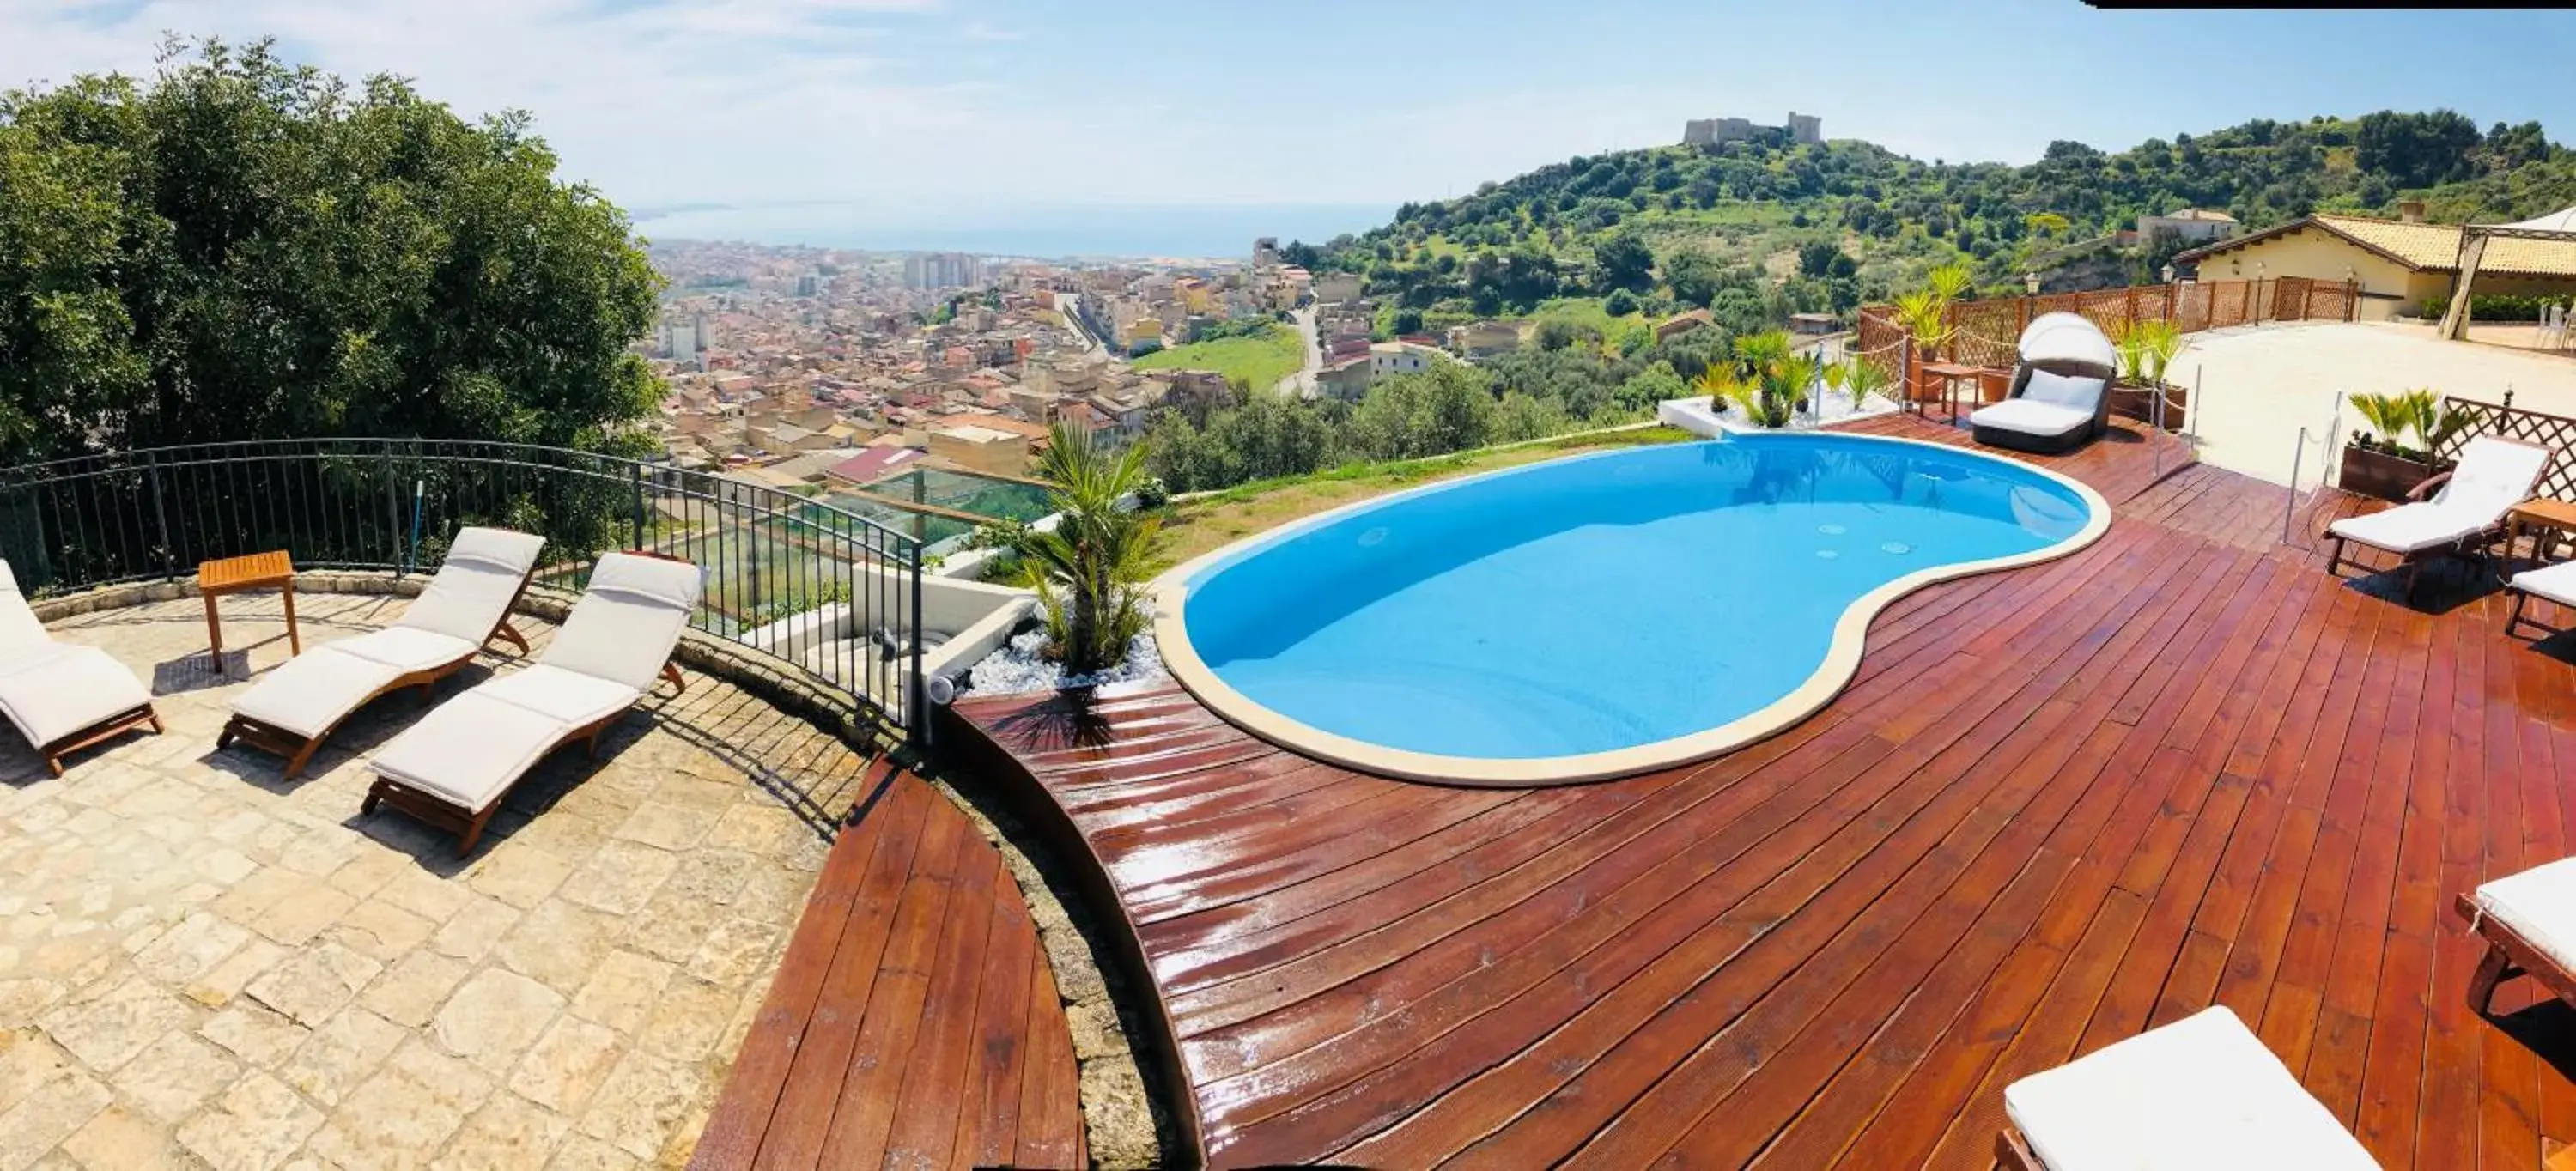 Activities, Pool View in Relais Villa Giuliana